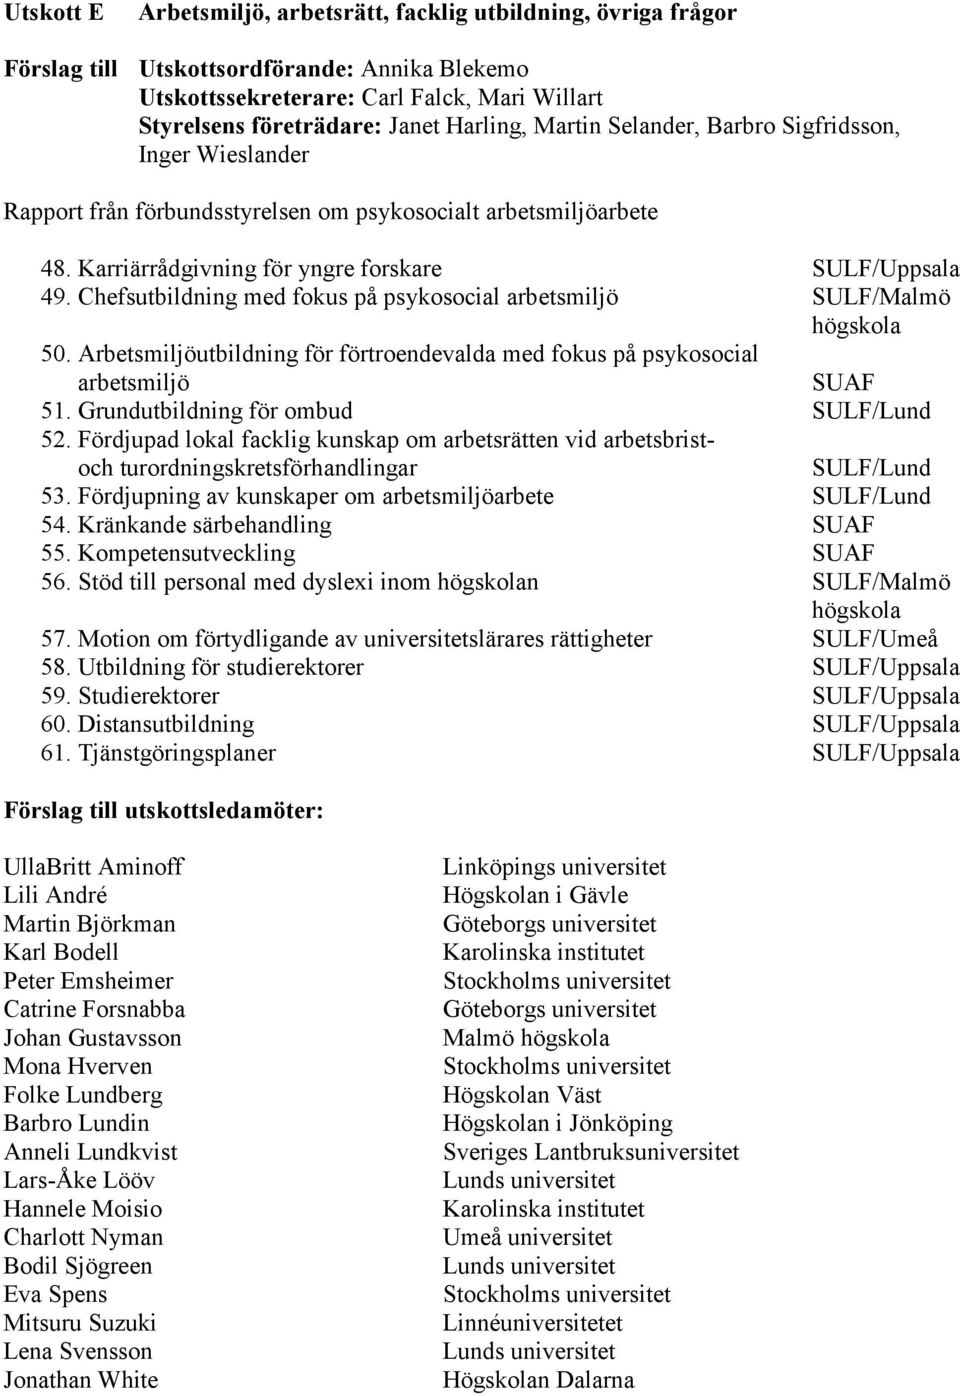 Chefsutbildning med fokus på psykosocial arbetsmiljö SULF/Malmö högskola 50. Arbetsmiljöutbildning för förtroendevalda med fokus på psykosocial arbetsmiljö SUAF 51.